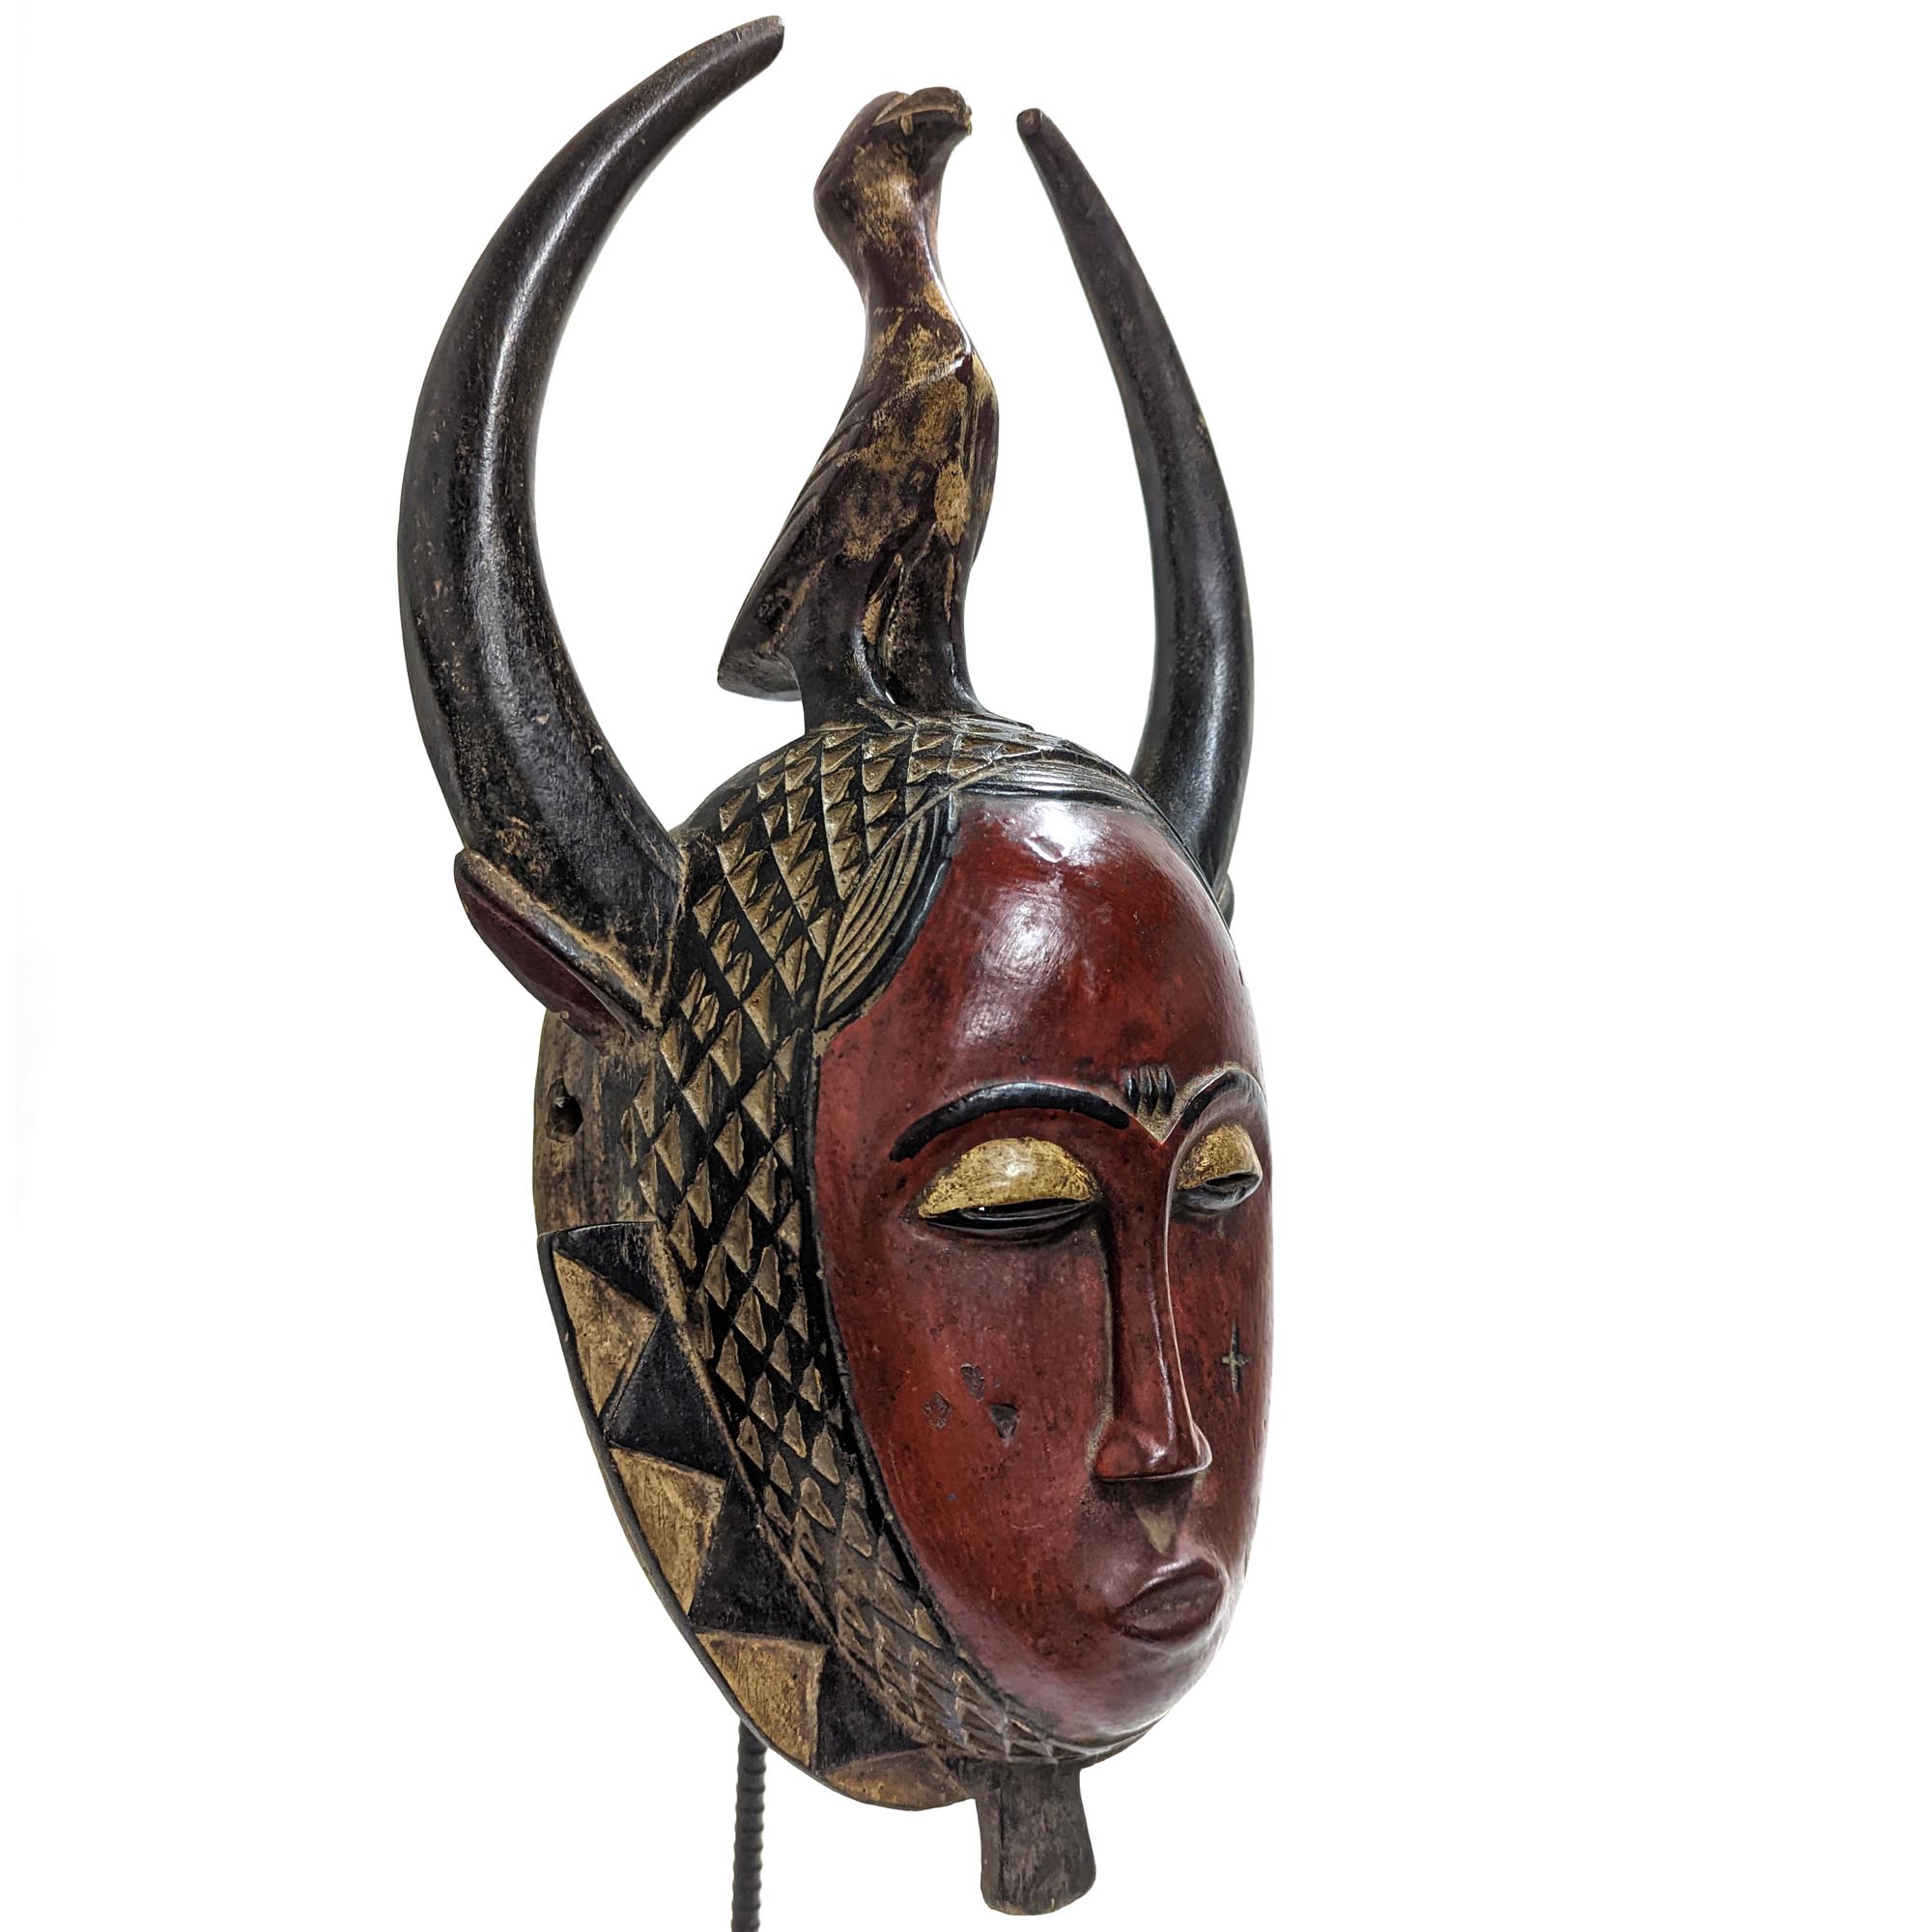 アフリカ コートジボワール ヤウレ族 マスク 仮面 No.113 木彫り アフリカンアート 彫刻